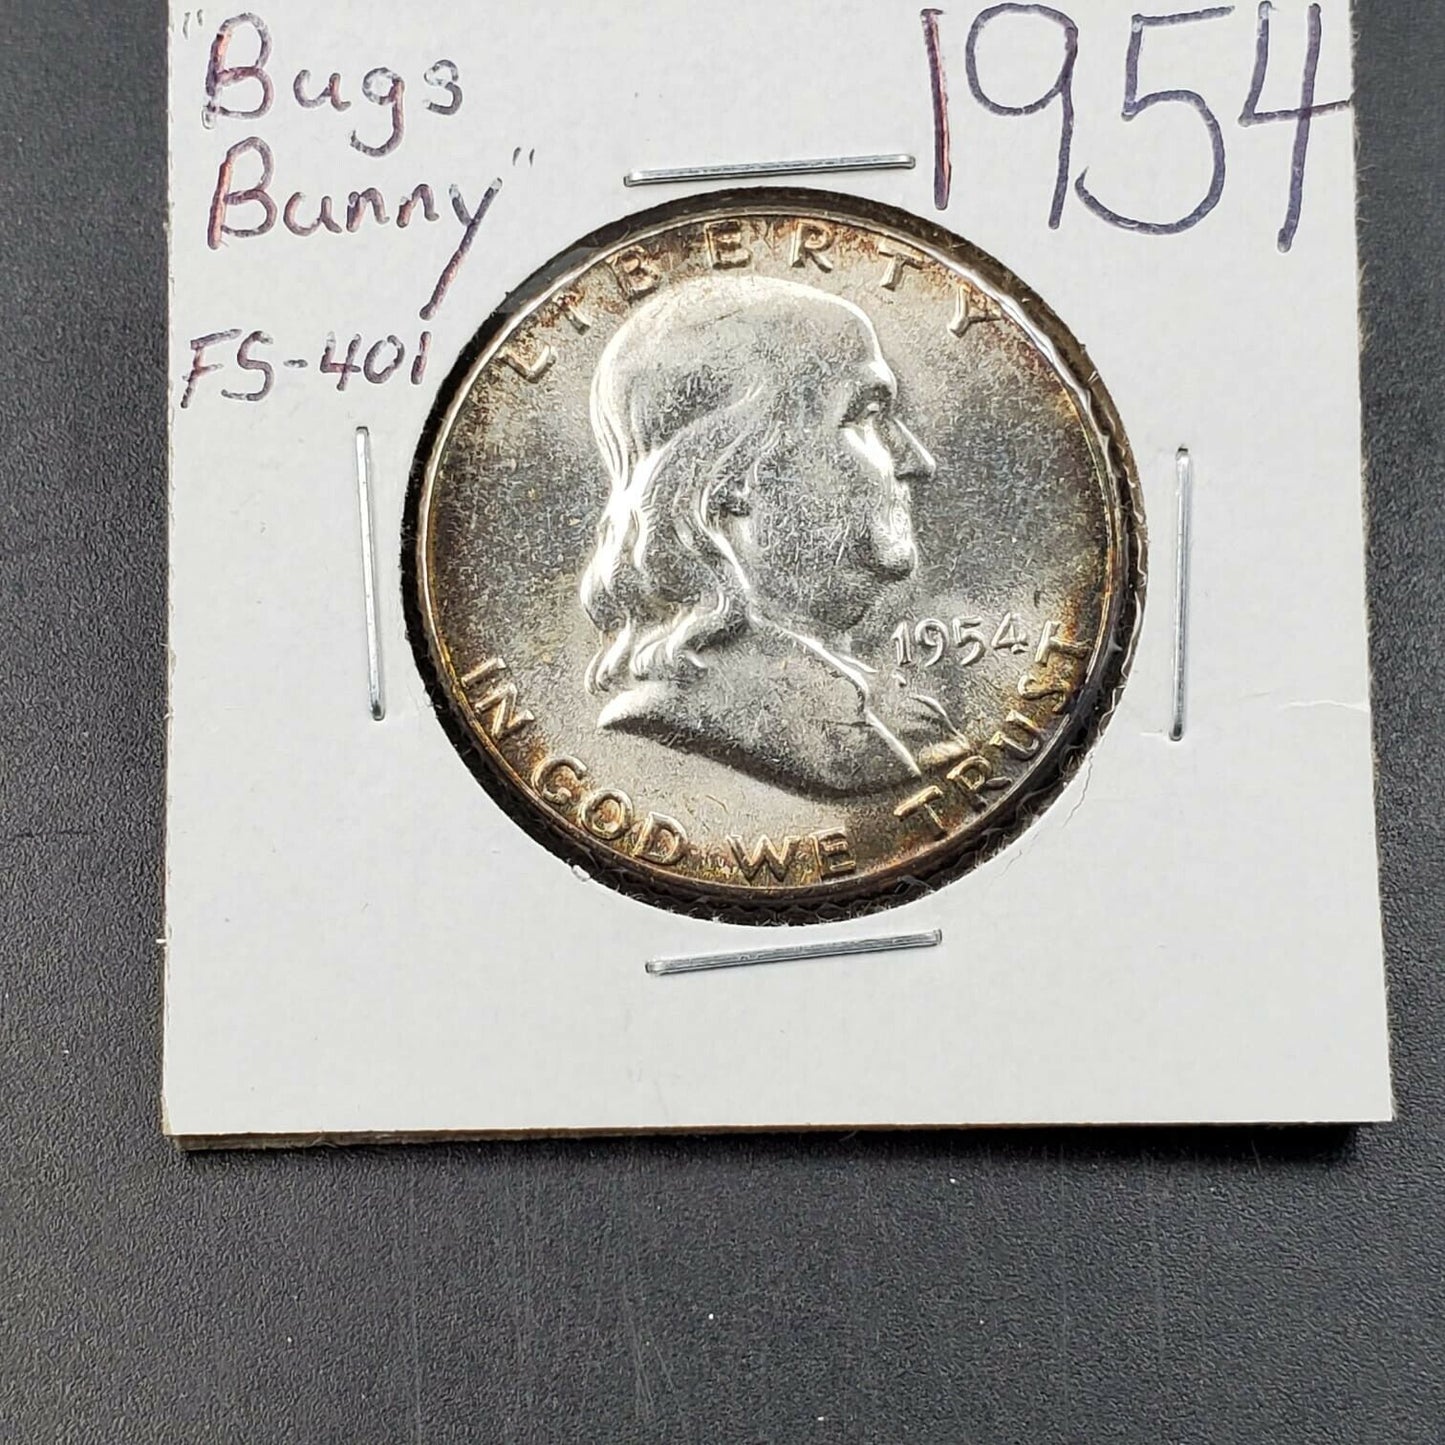 1954 P Franklin Silver 90% Half Dollar Coin CH BU UNC Bugs Bunny FS-401 Variety